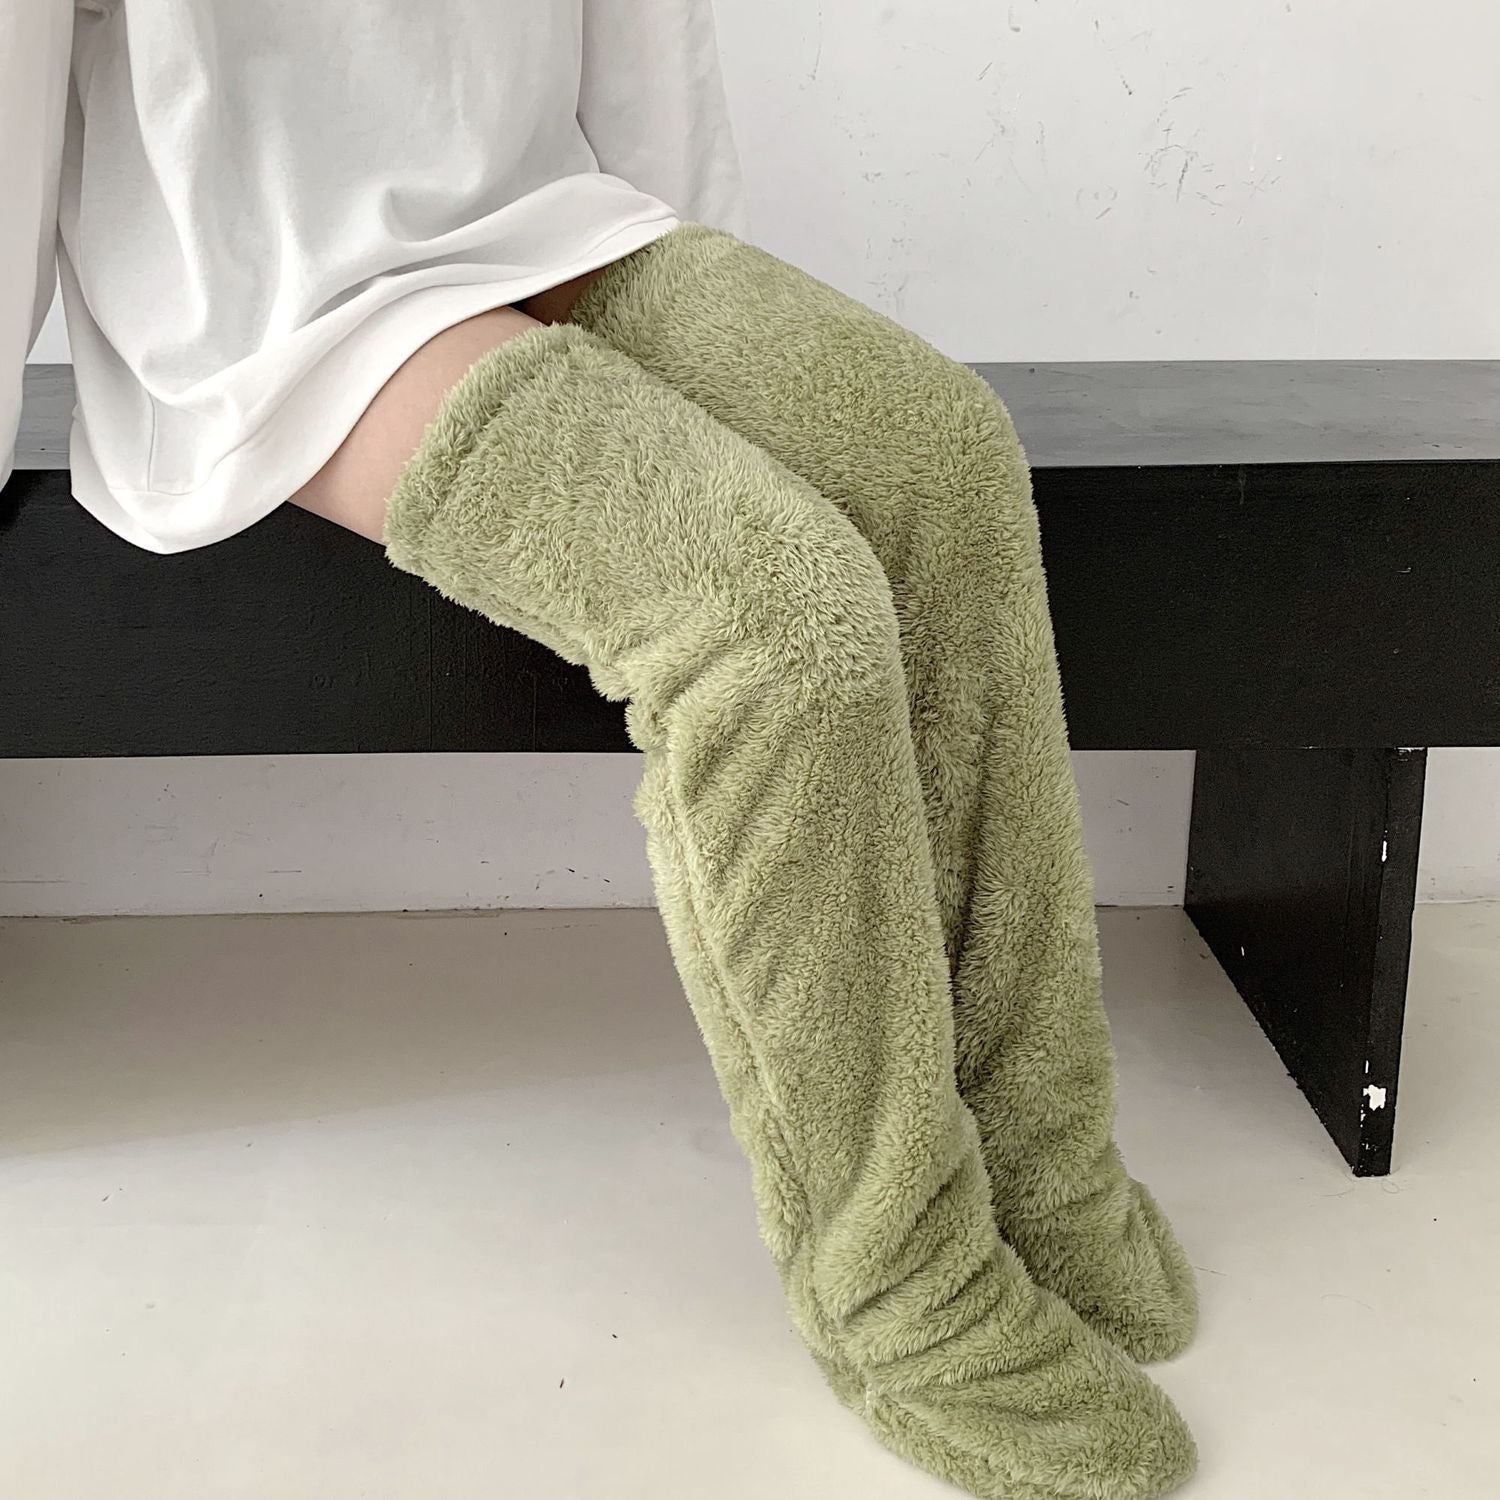 Mittex™ Warmy Socks